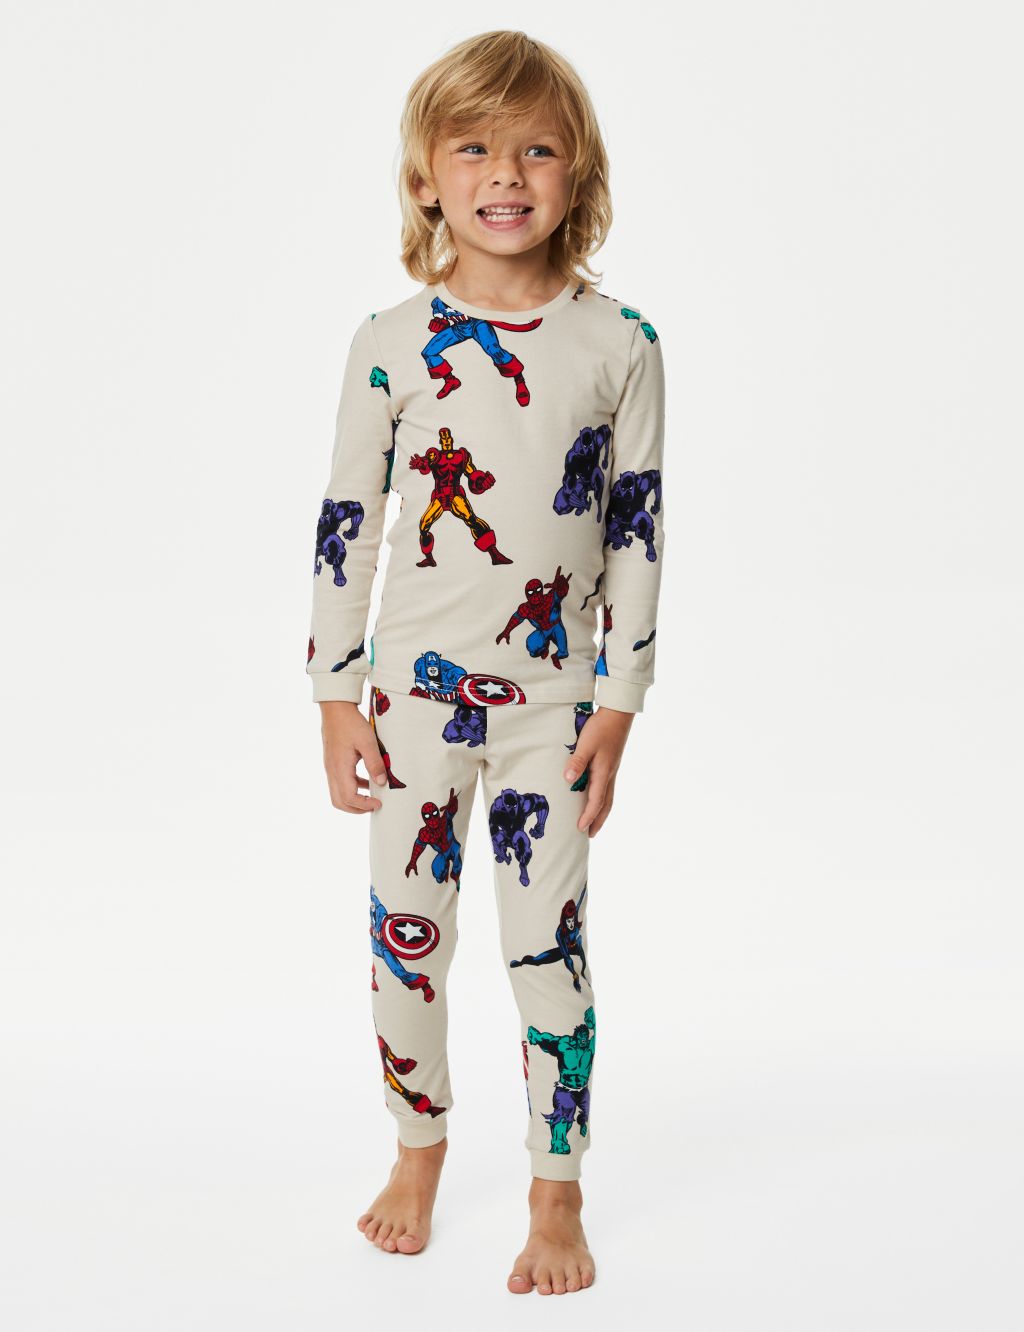 Avengers™ Pyjamas (3-12 Yrs) image 1